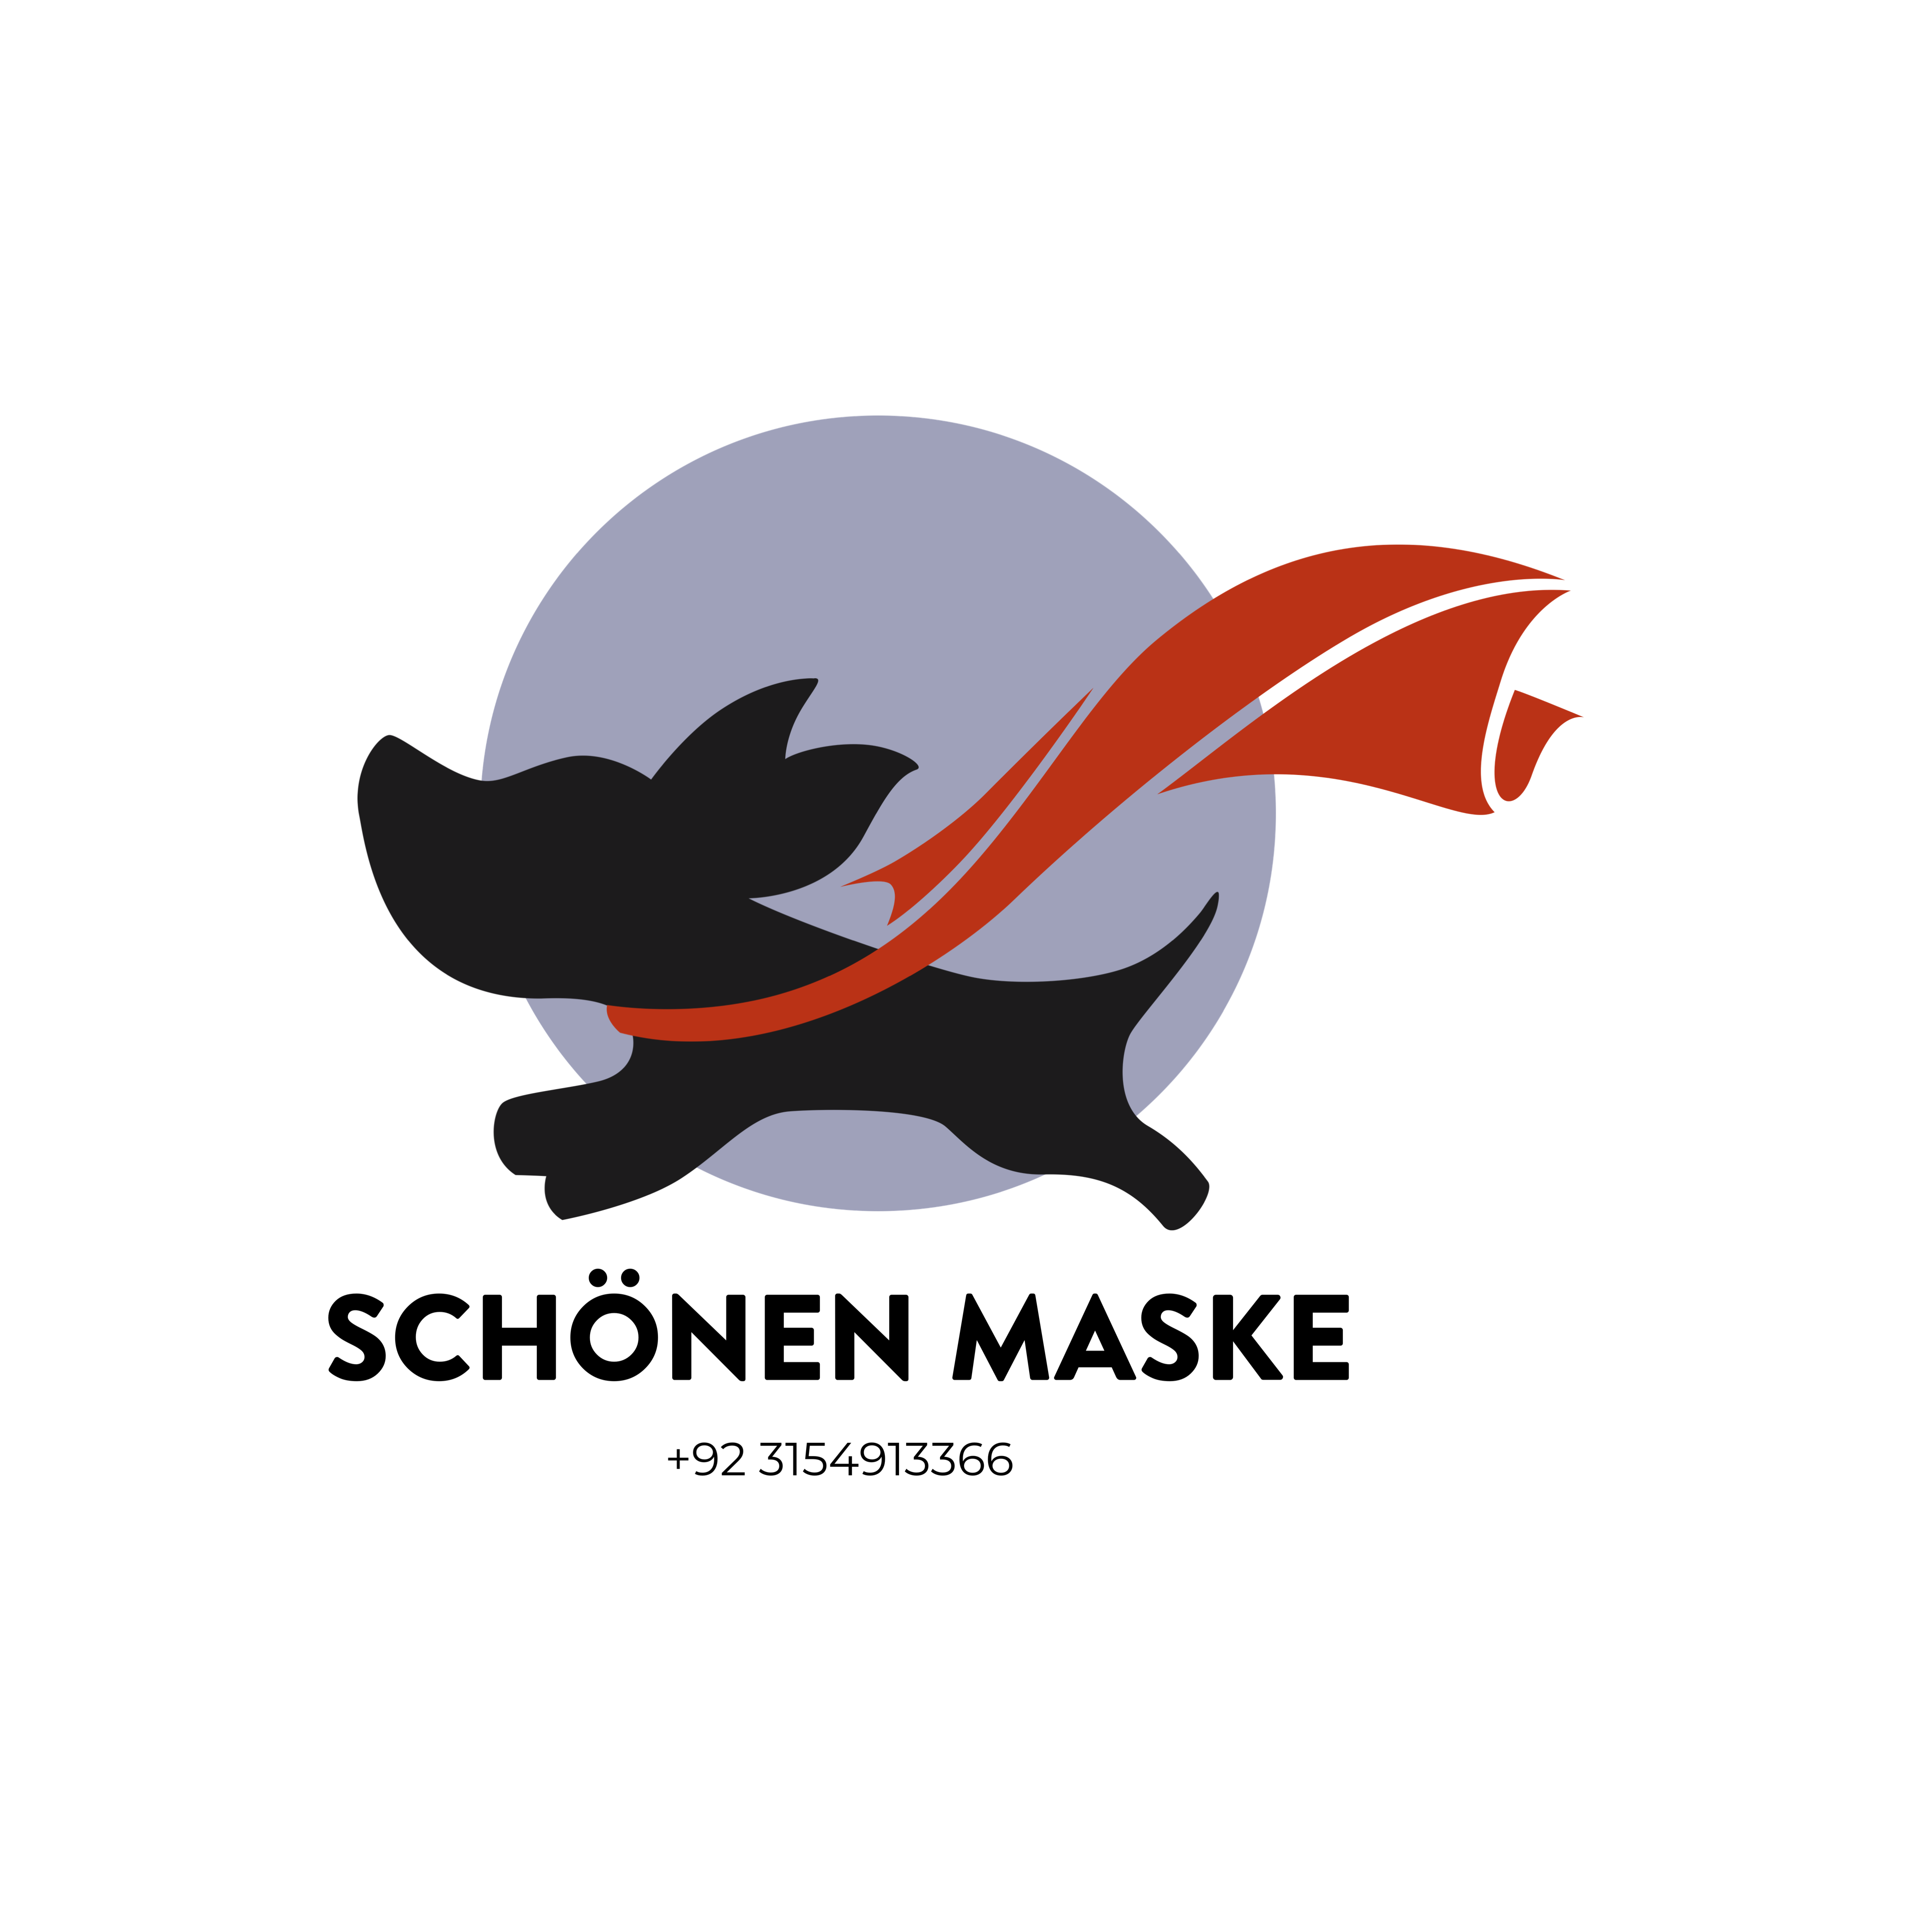 Picture of Schönen Maske 